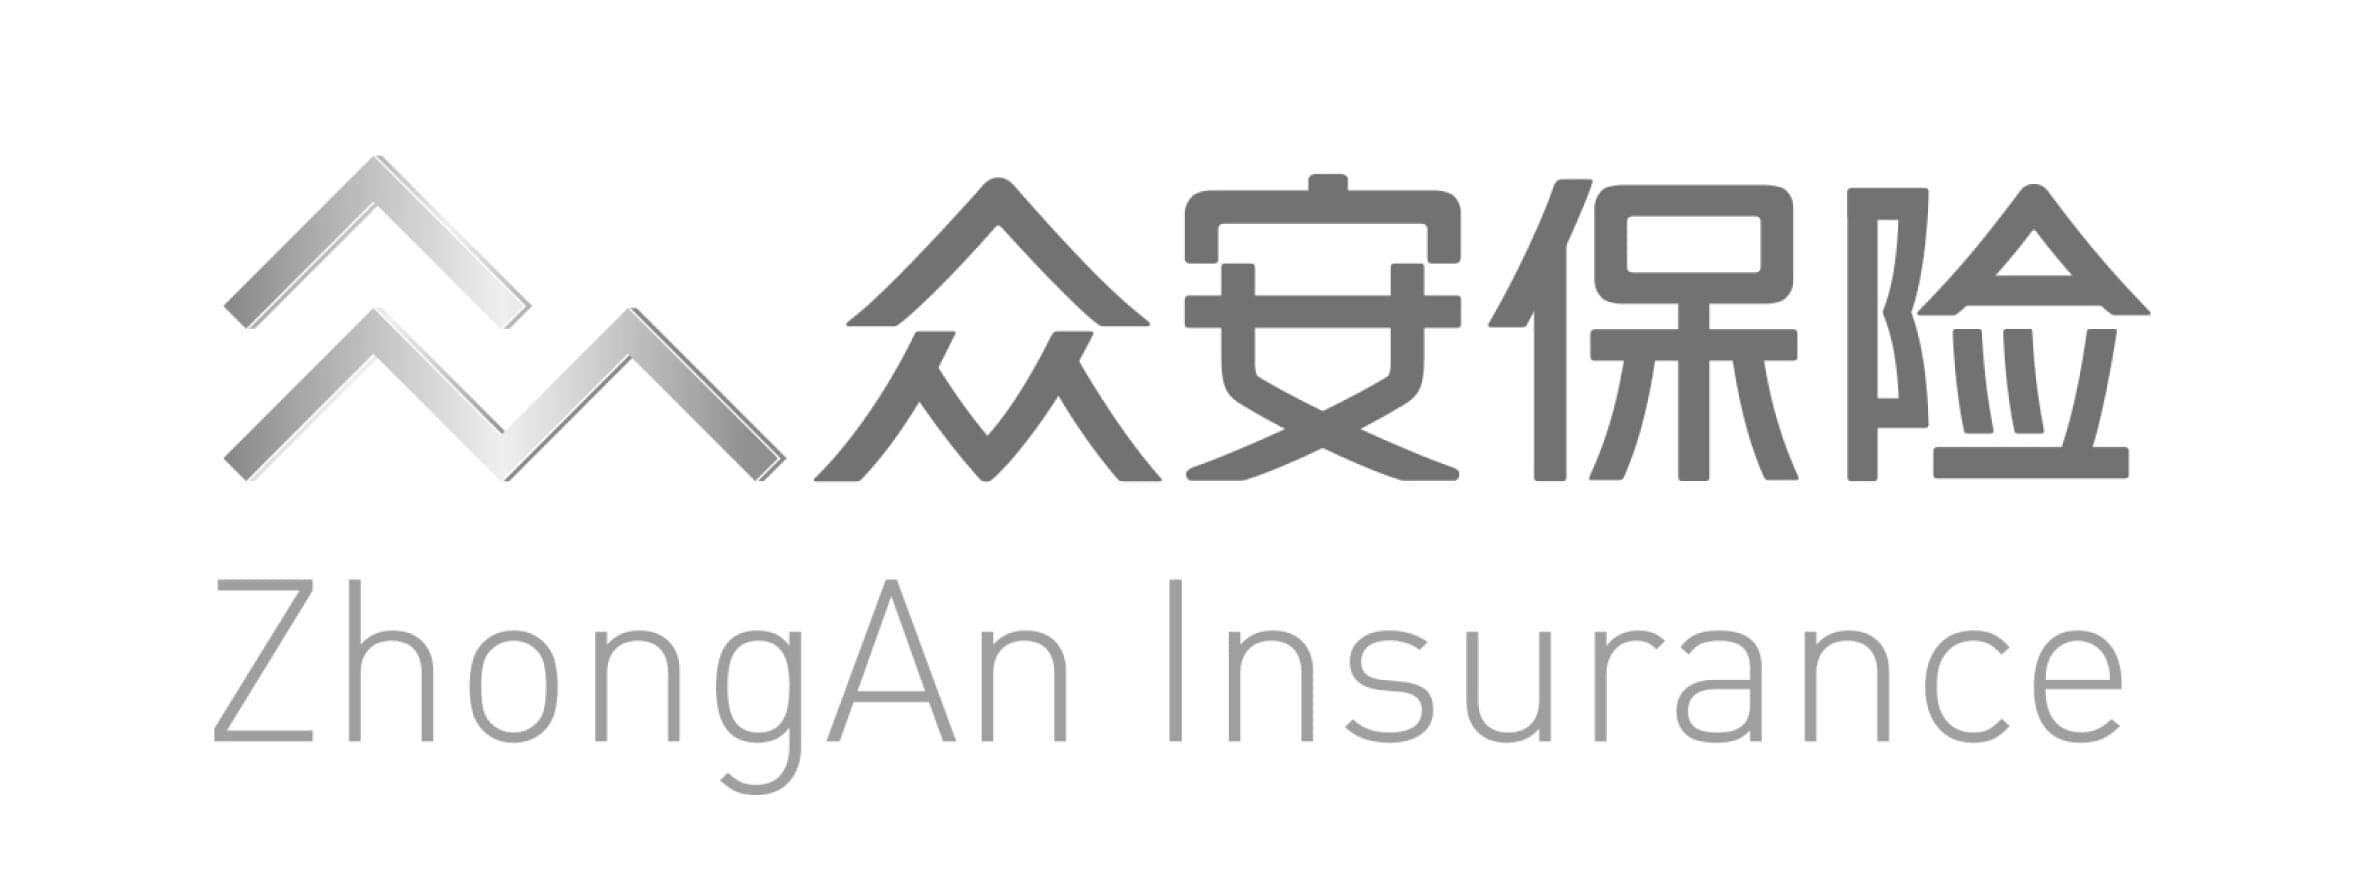 zhongan insurance